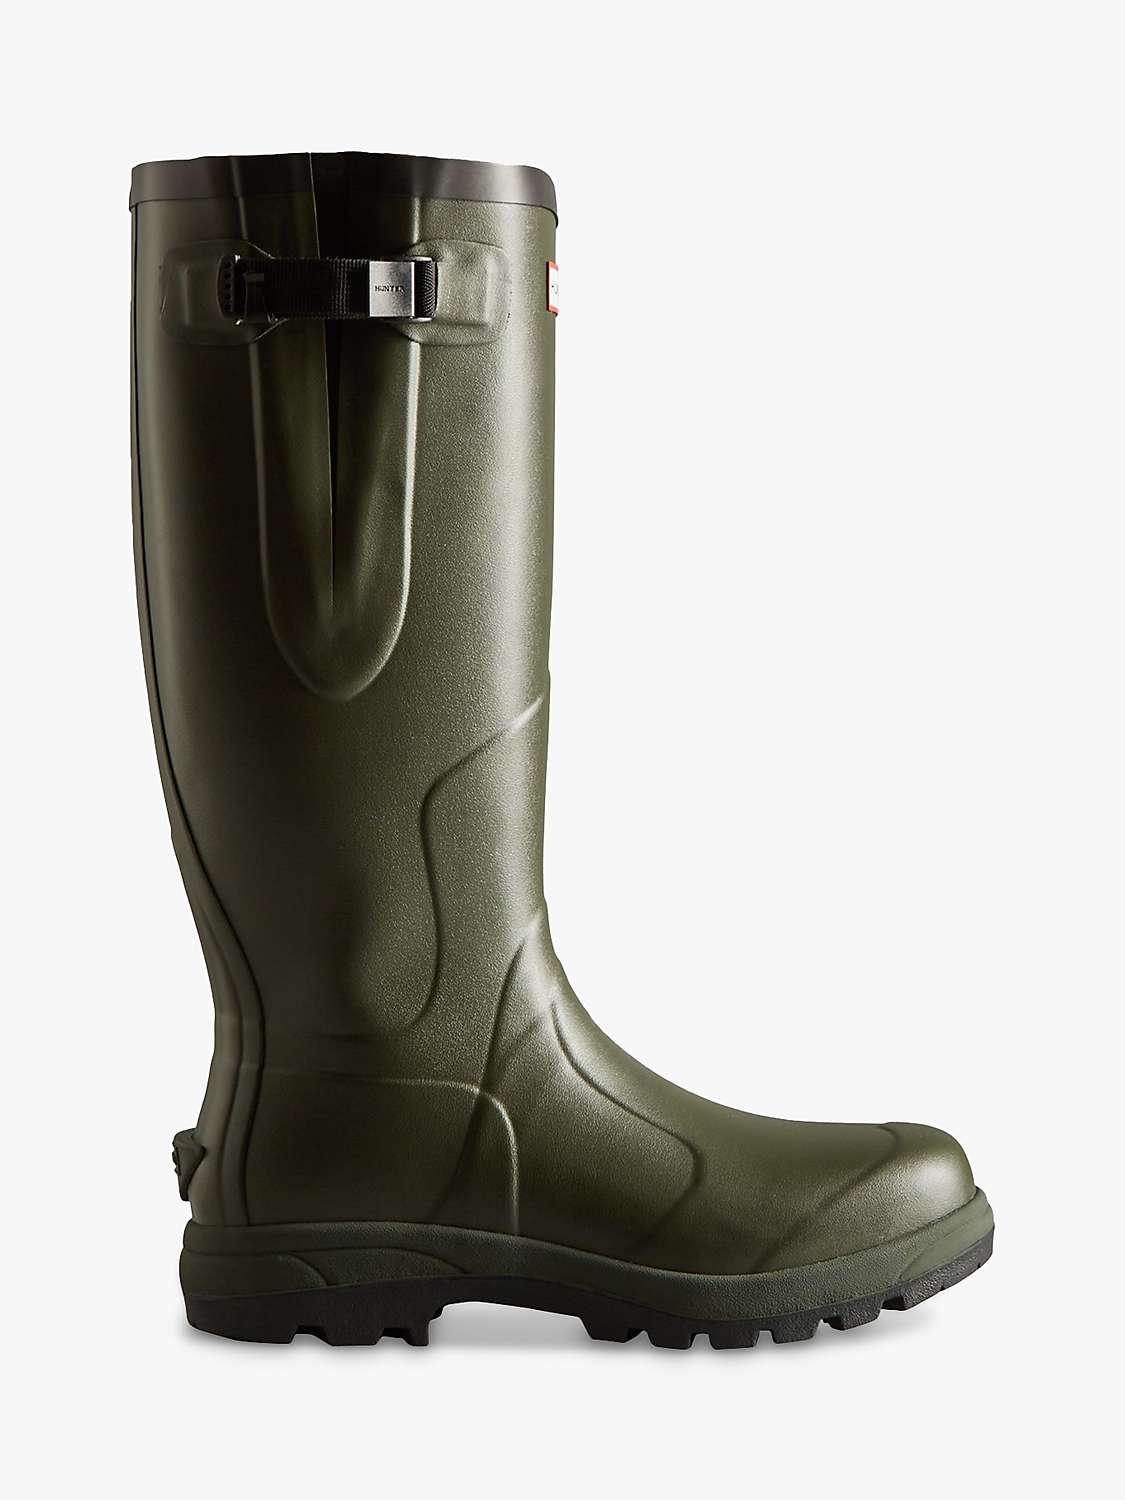 Buy Hunter Unisex Balmoral Adjustable Wellington Boots, Dark Olive Online at johnlewis.com